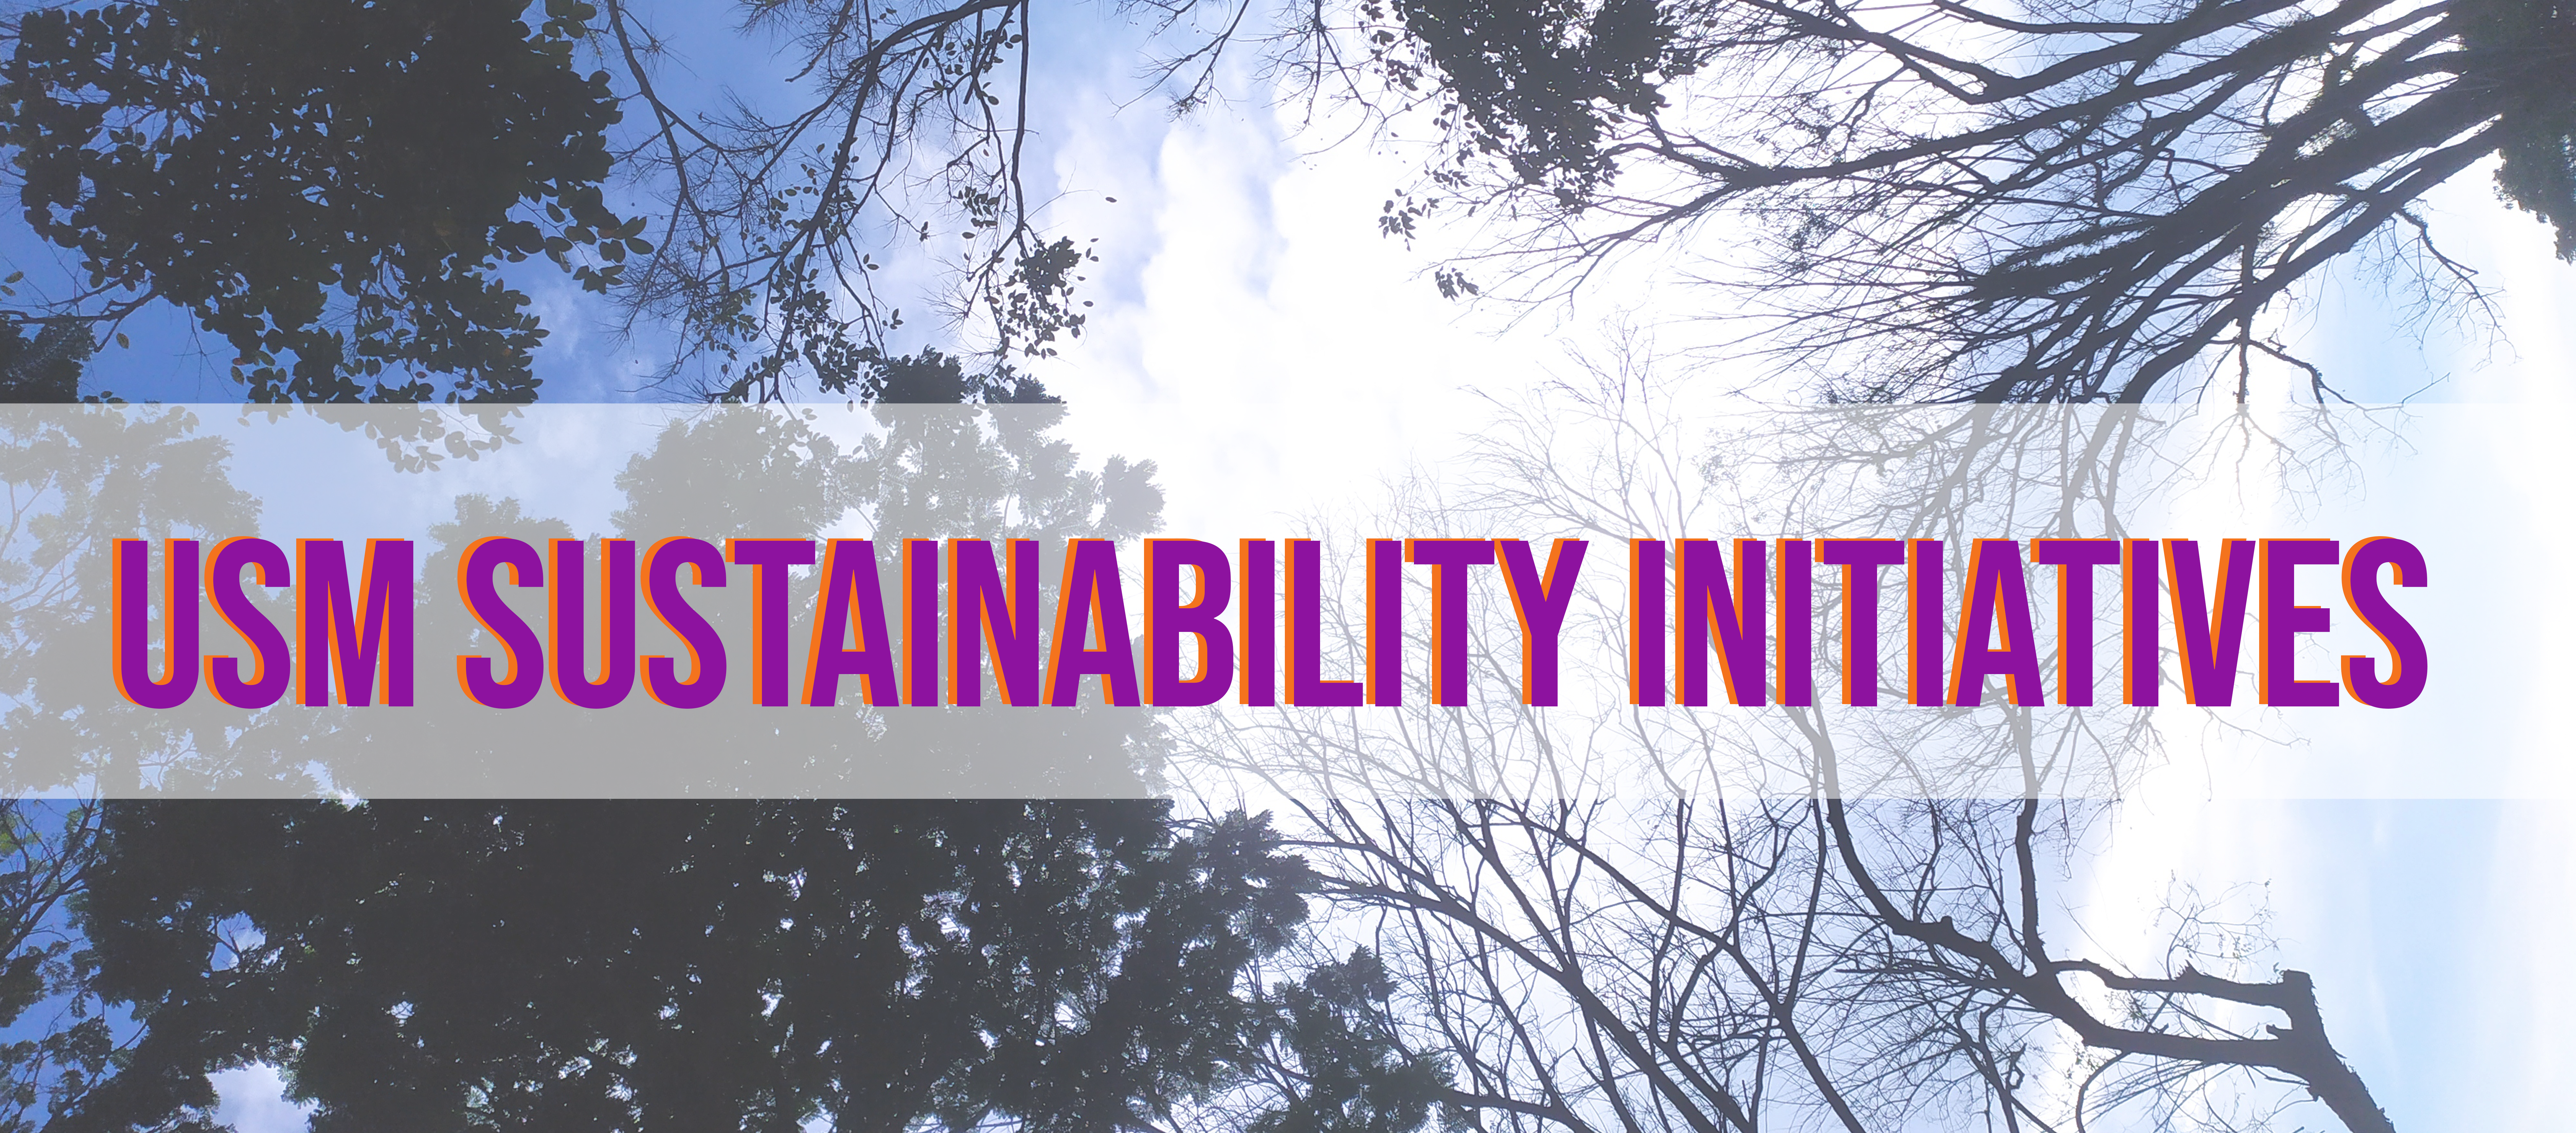 USM Sustainability Initiatives